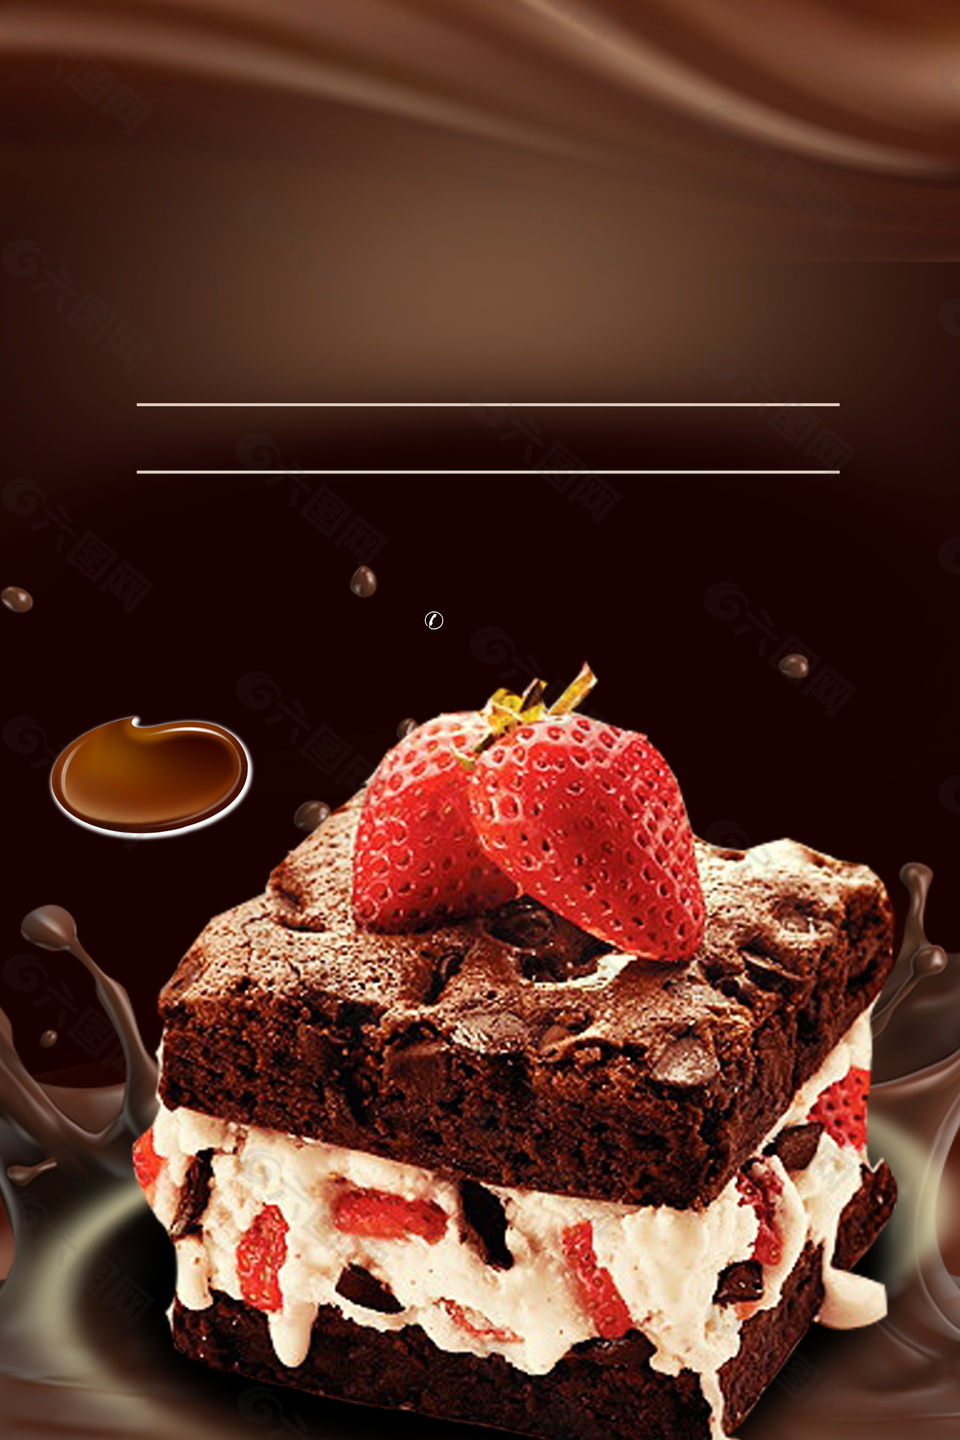 浓郁巧克力草莓蛋糕广告背景